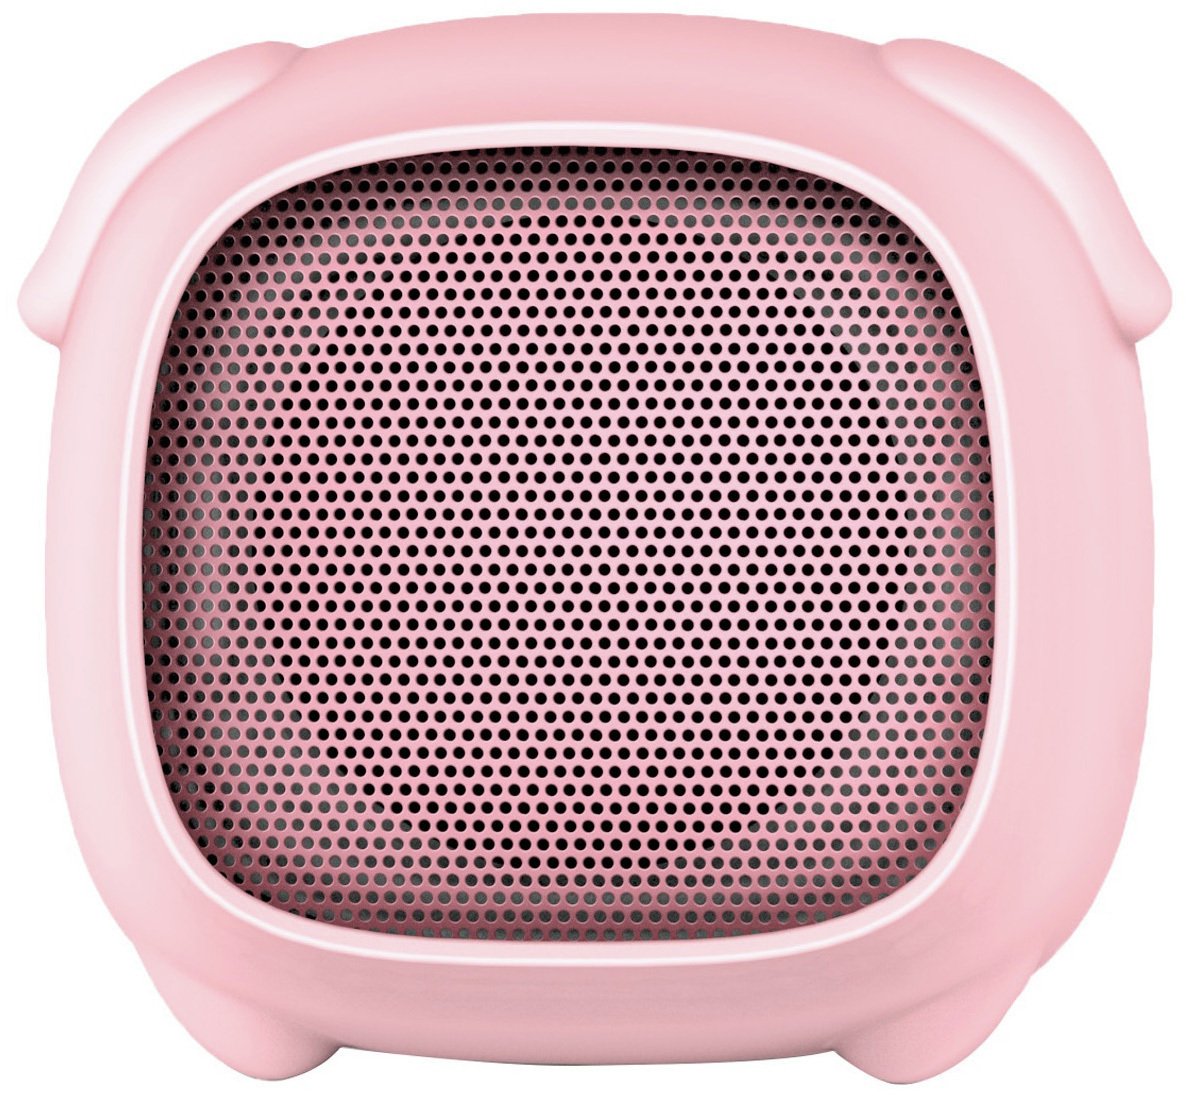 Kitsound Boogie Buddies Pig Bluetooth Speaker